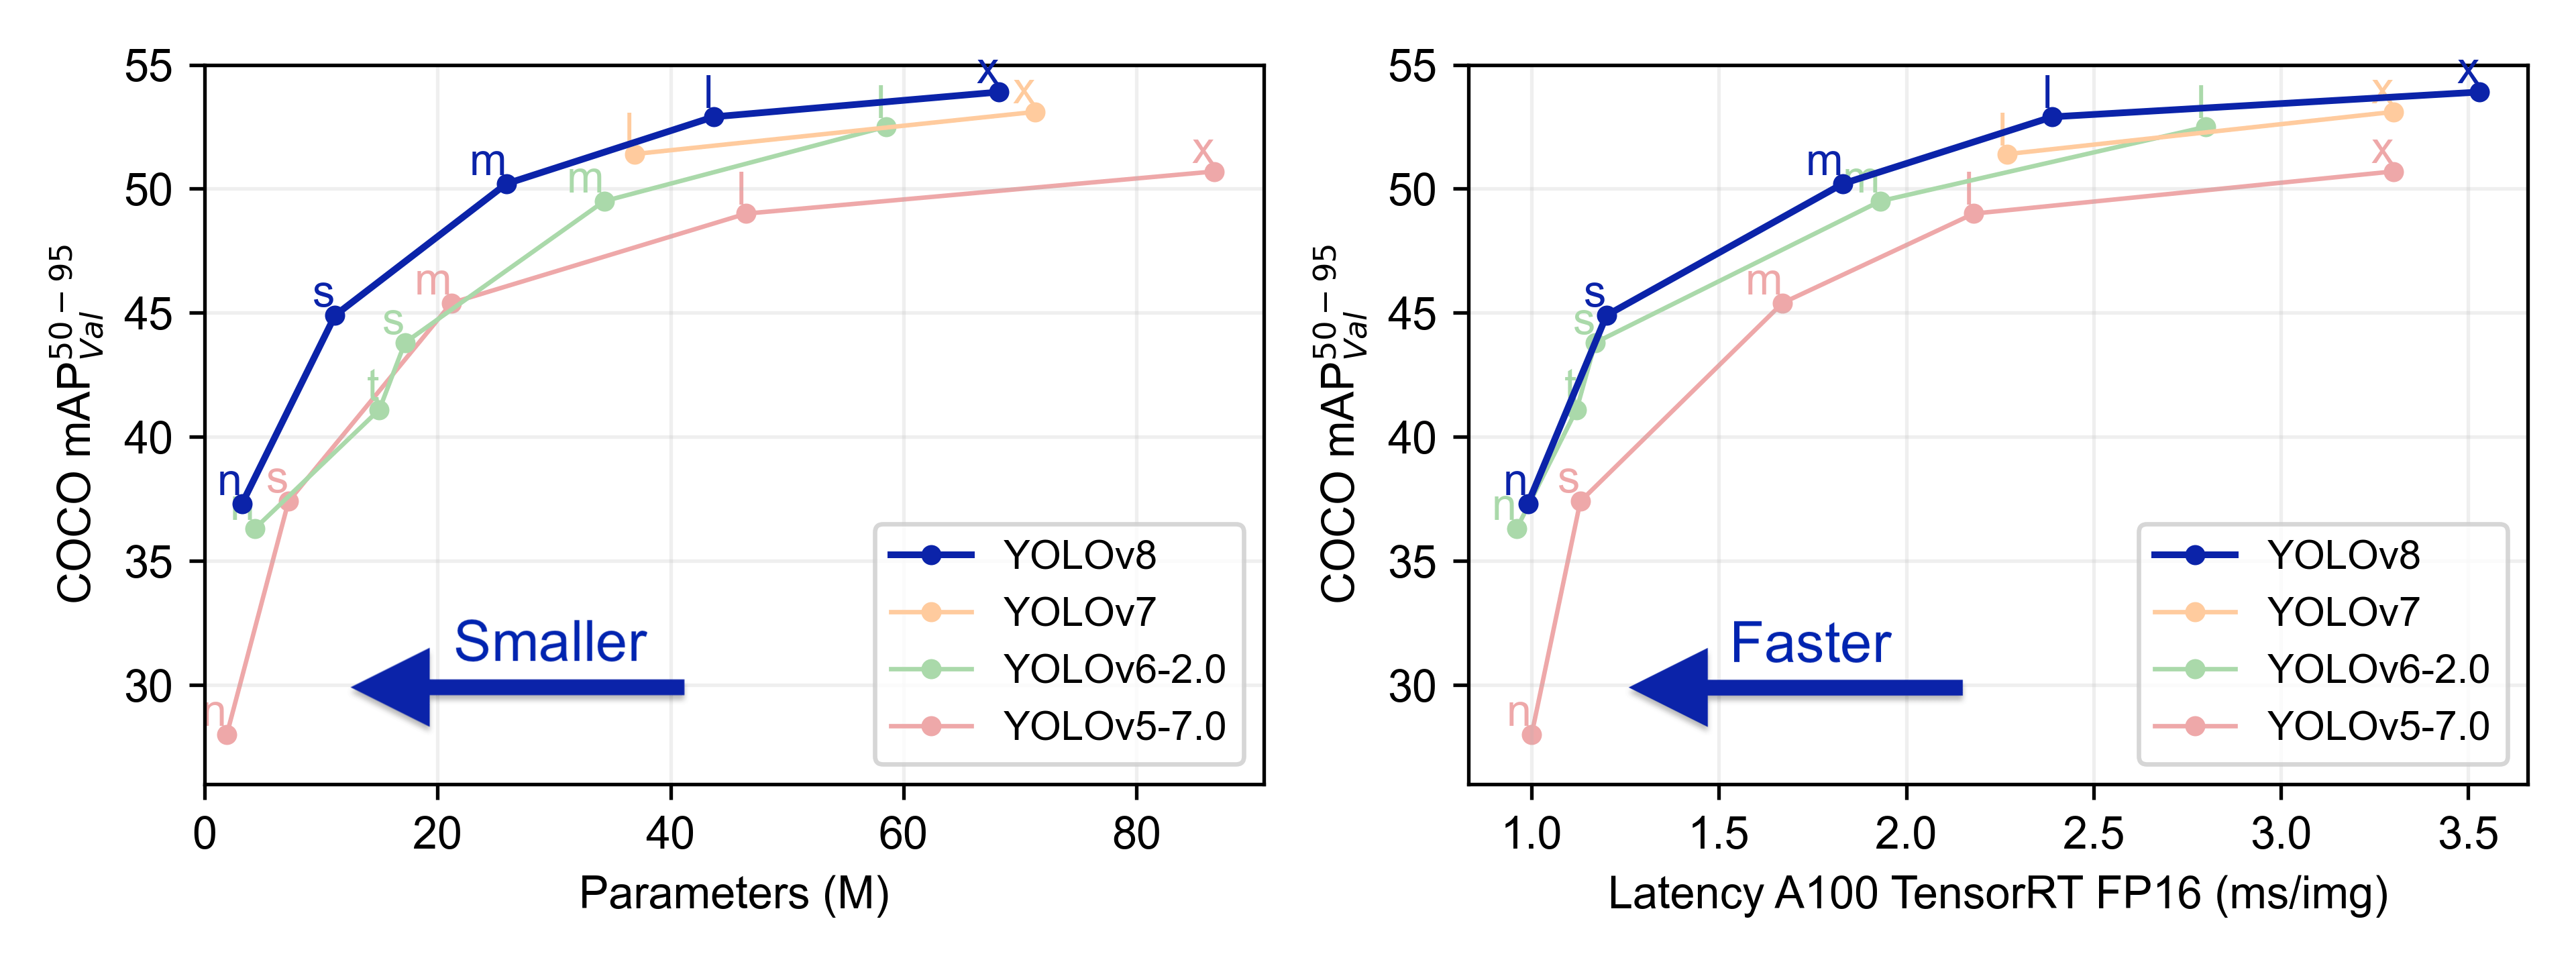 YOLO Model Comparison